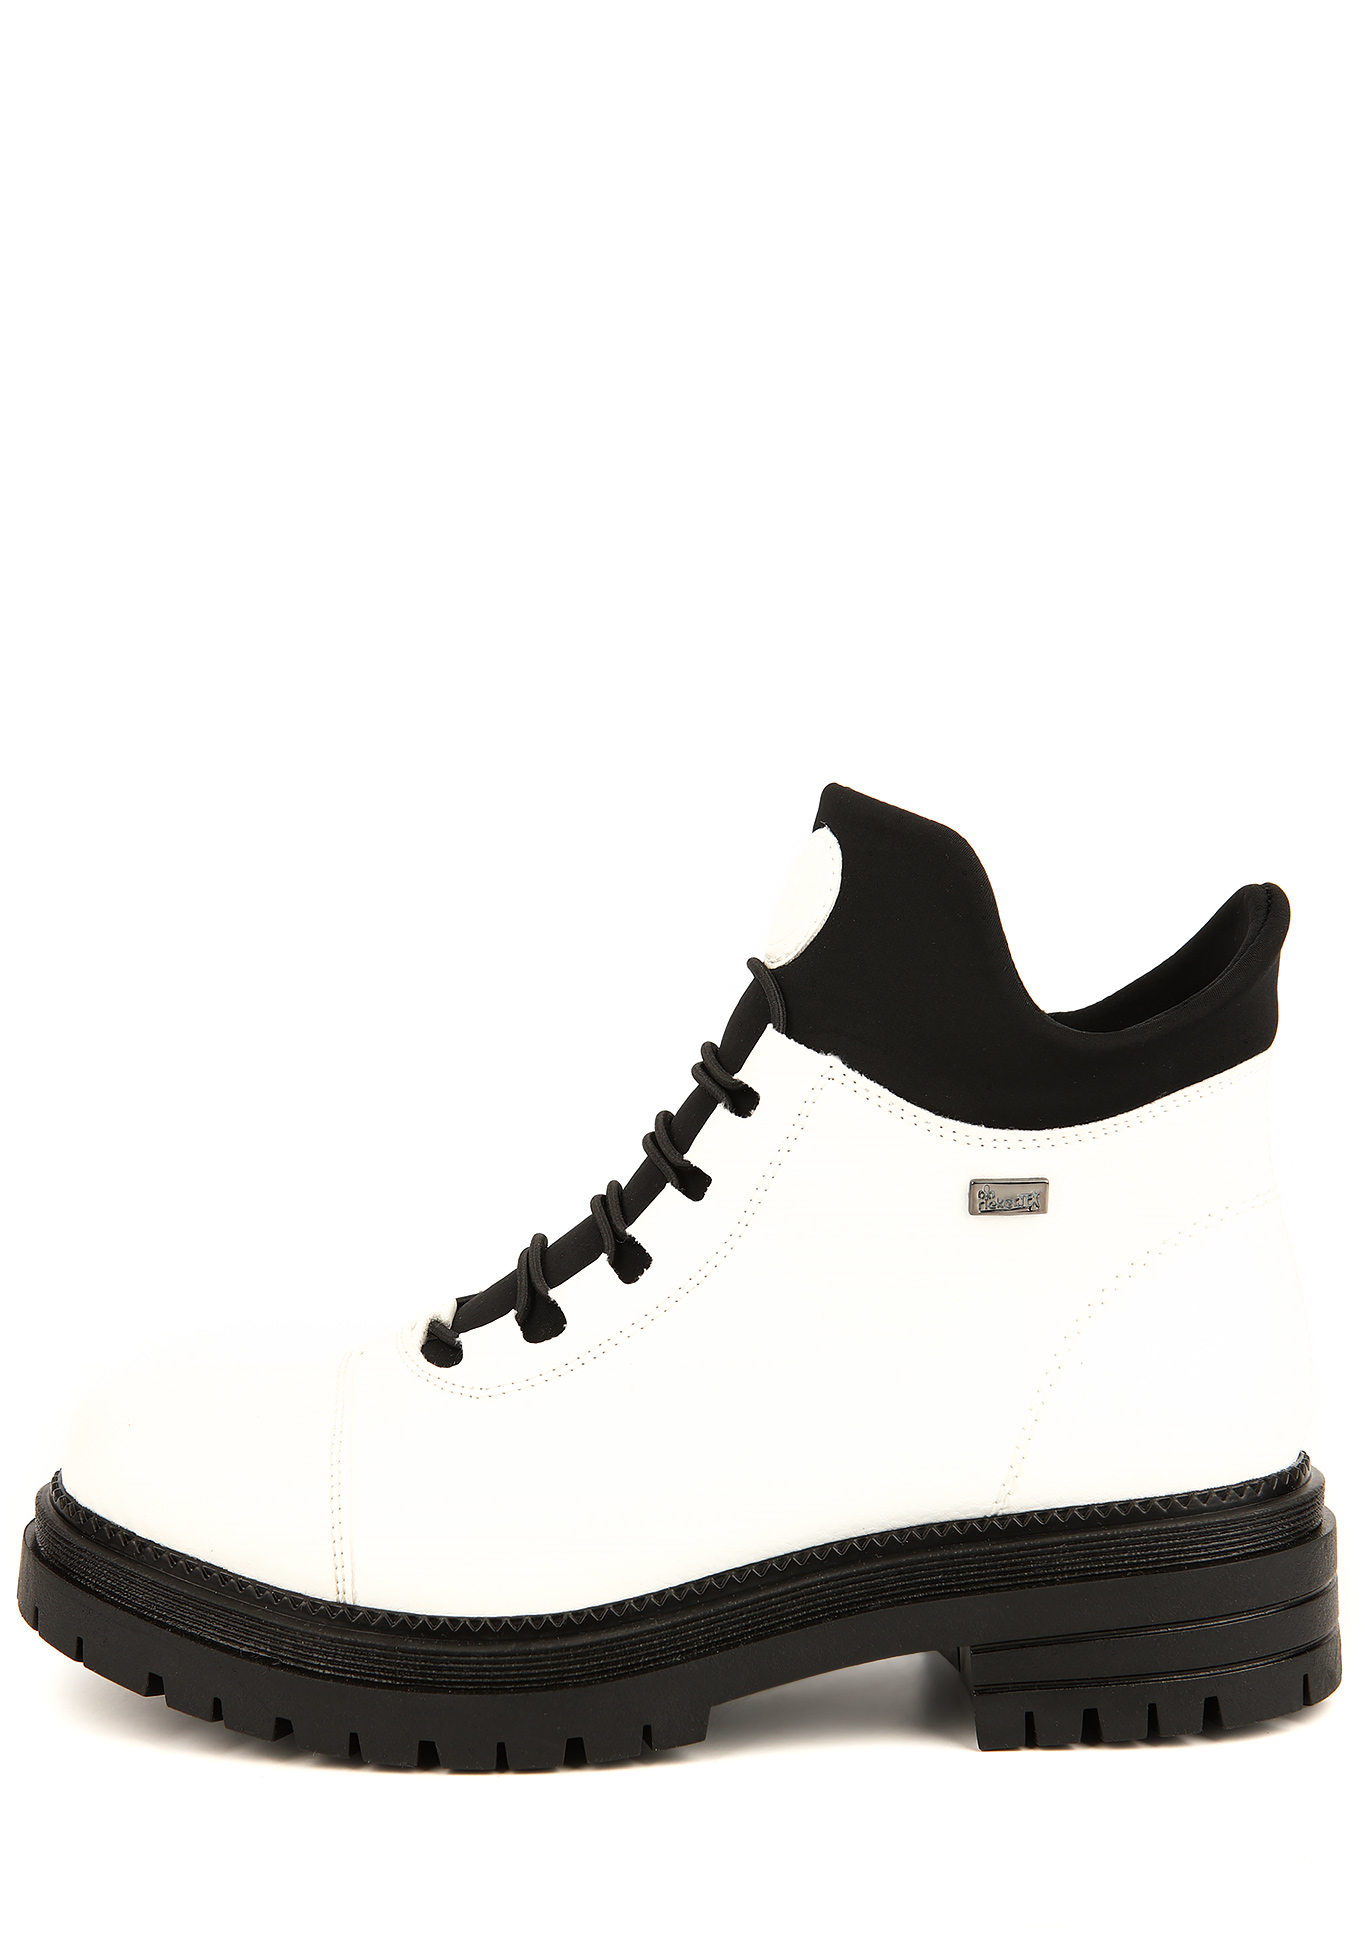 Ботинки женские "Виолла" Rieker, размер 38, цвет черный - фото 3